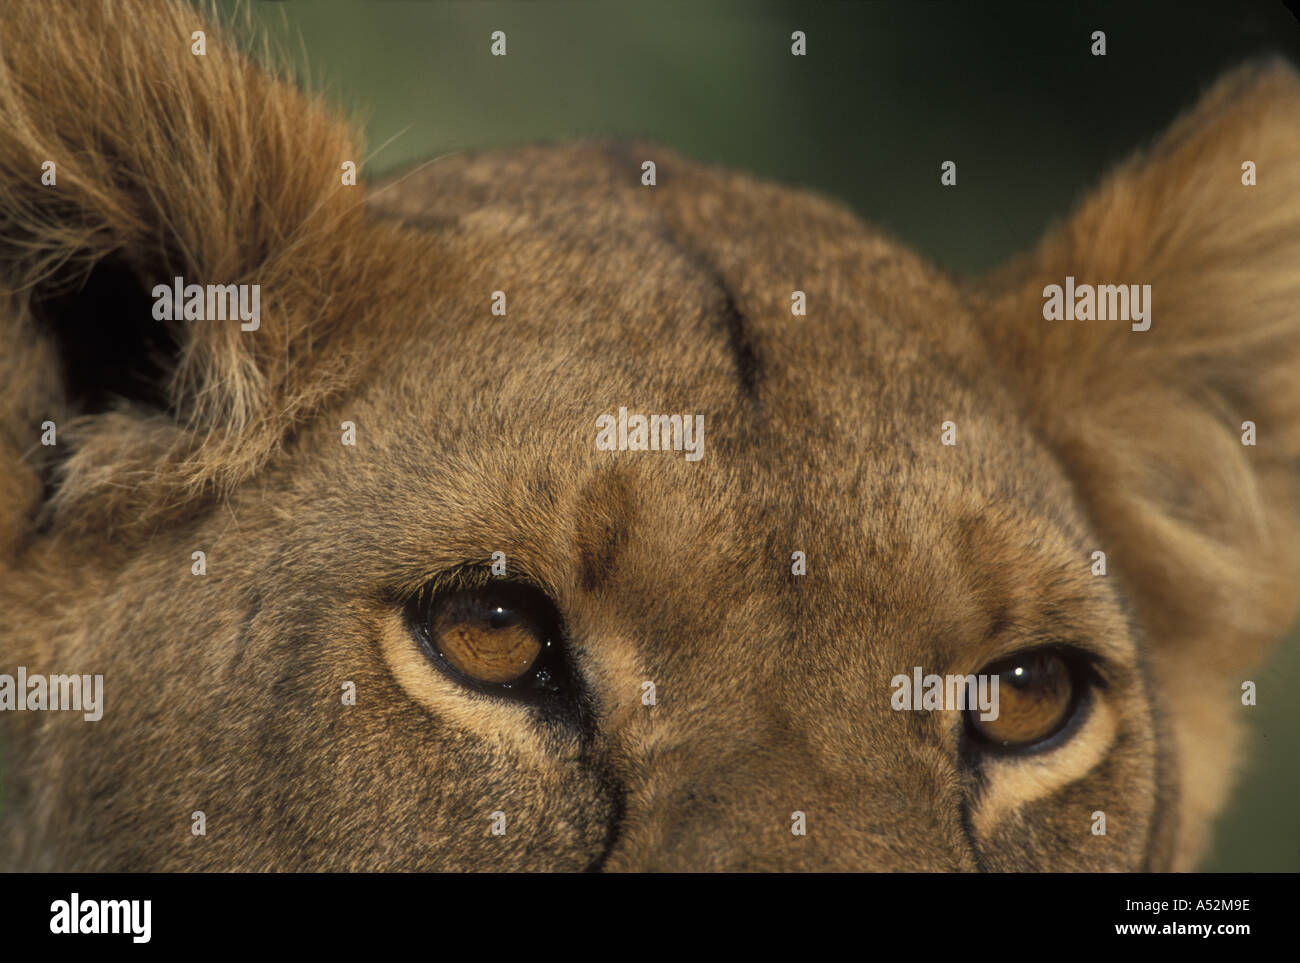 África Kenia la reserva Masai Mara close up retrato de León Panthera leo ojos y oídos en la sabana Foto de stock